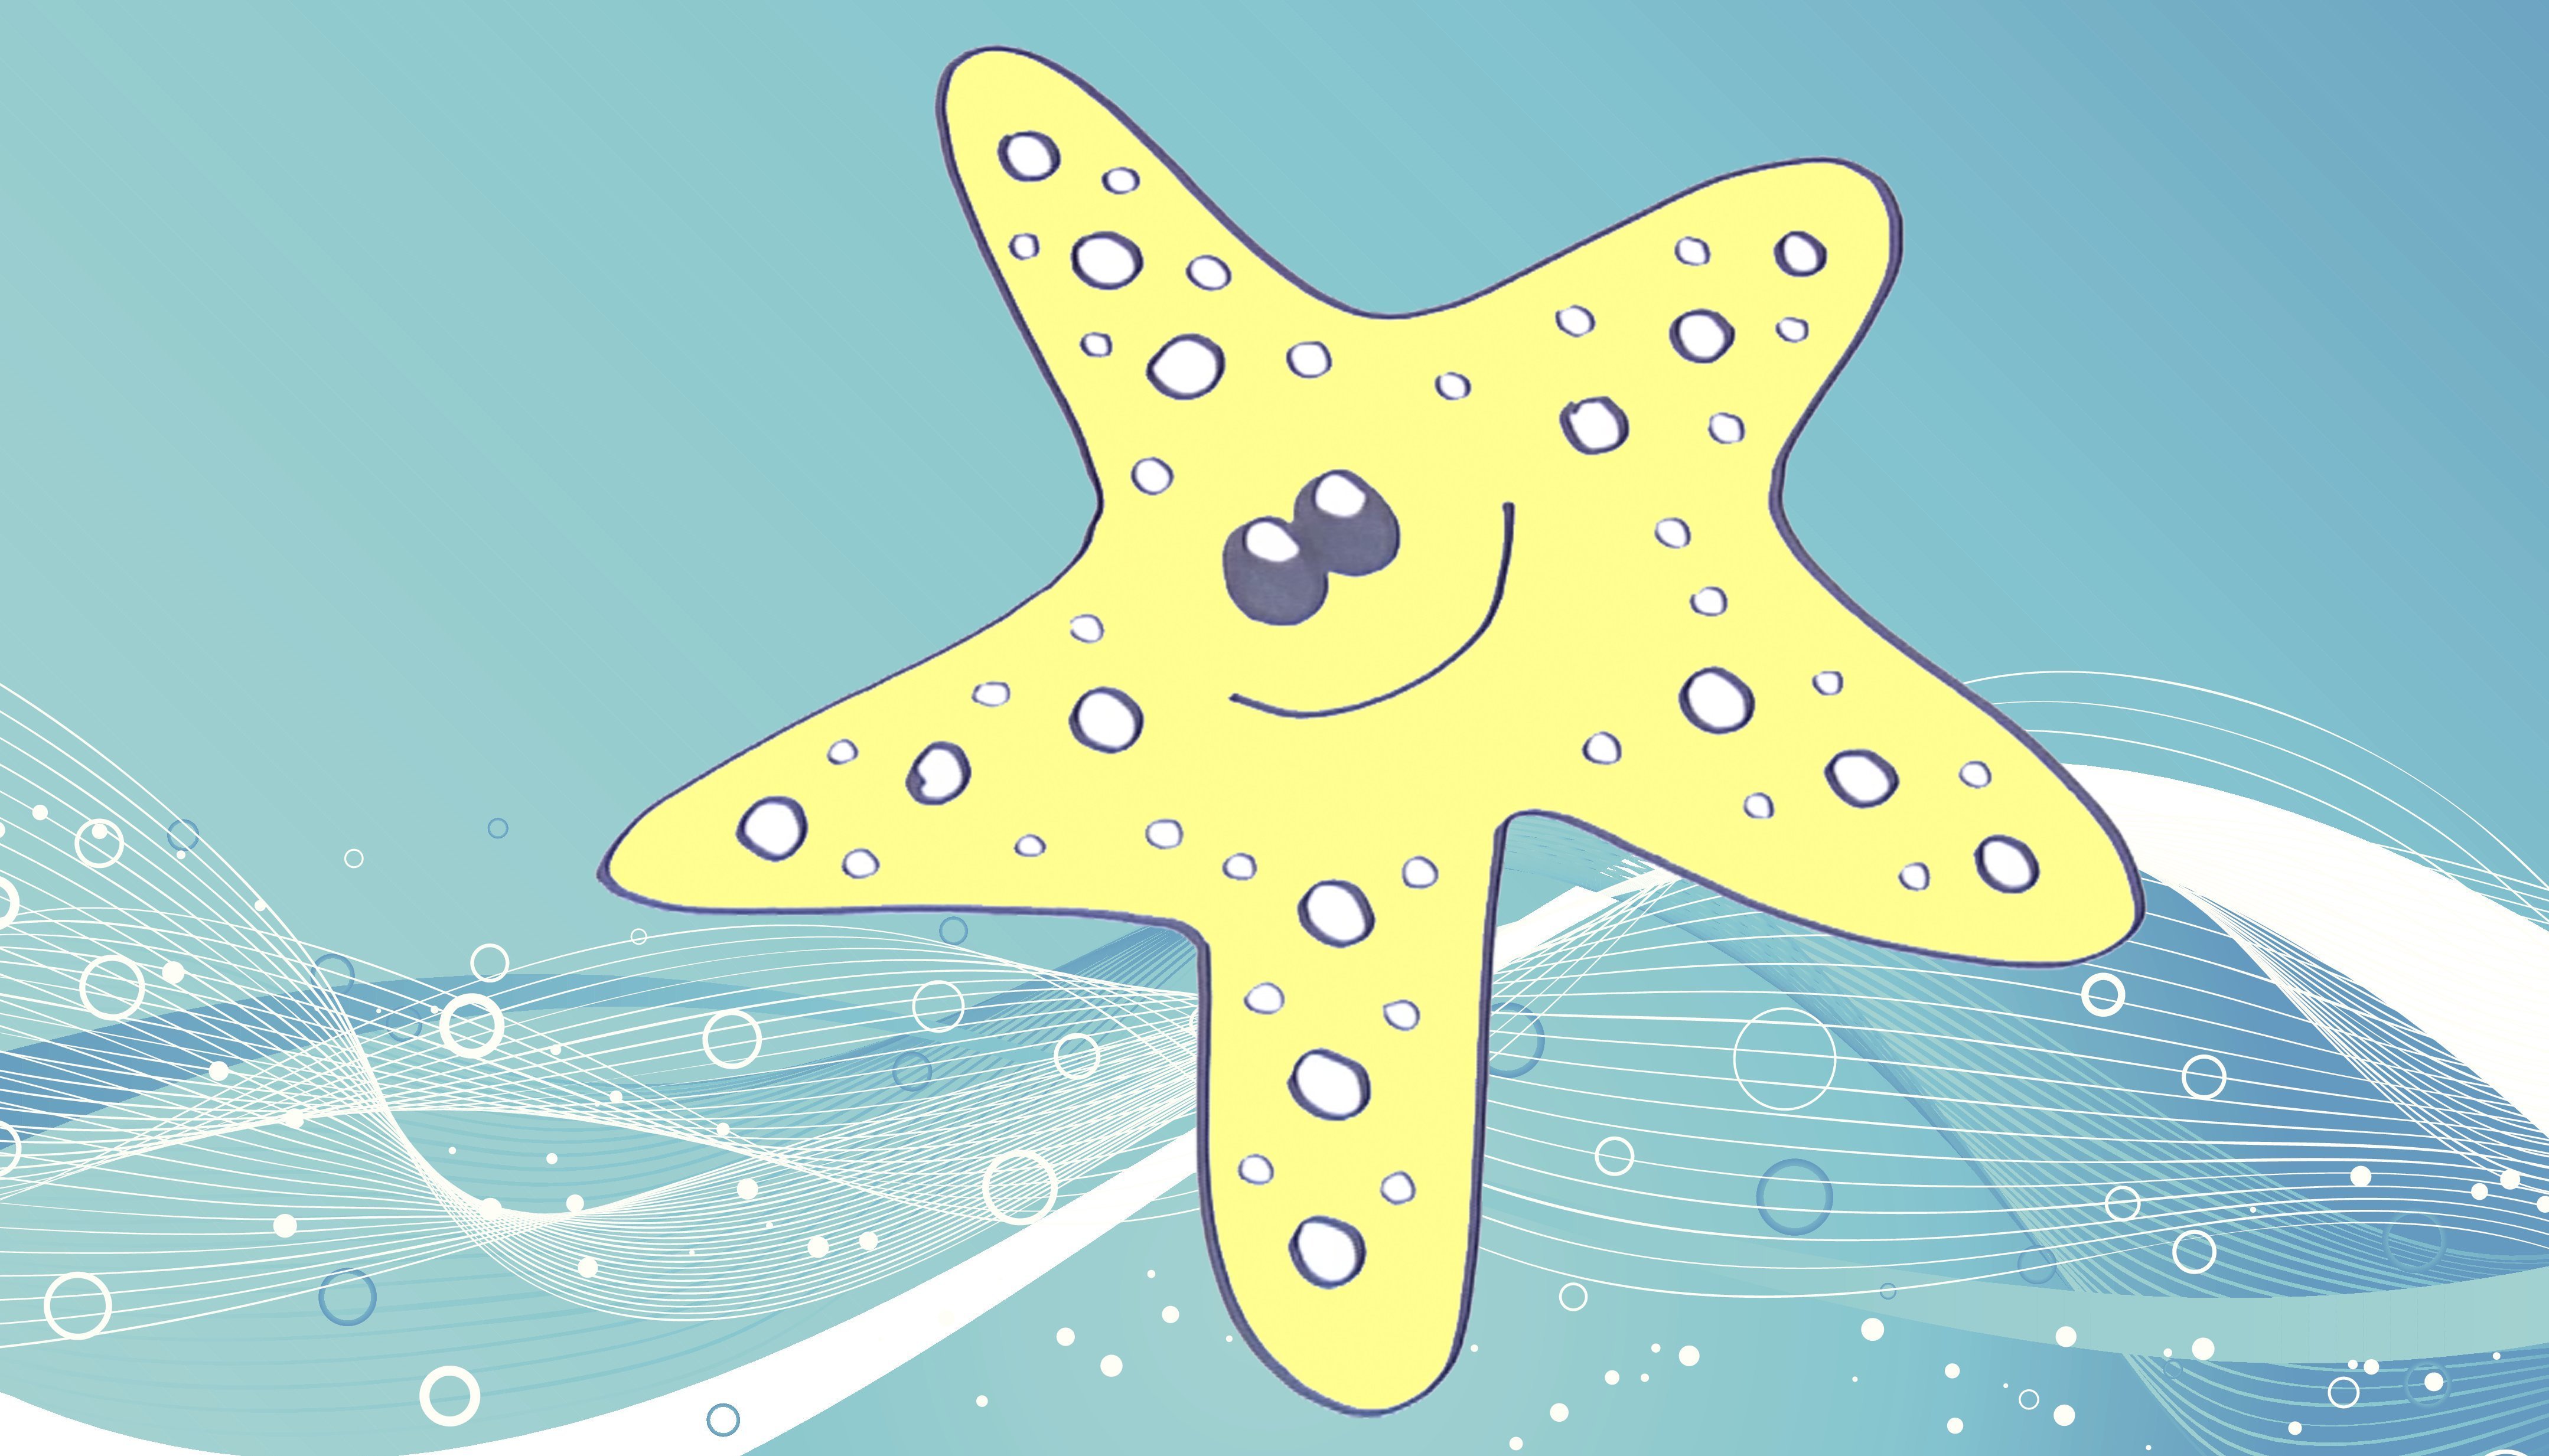 Dibujos para niños de animales marinos. Cómo dibujar una estrella de mar